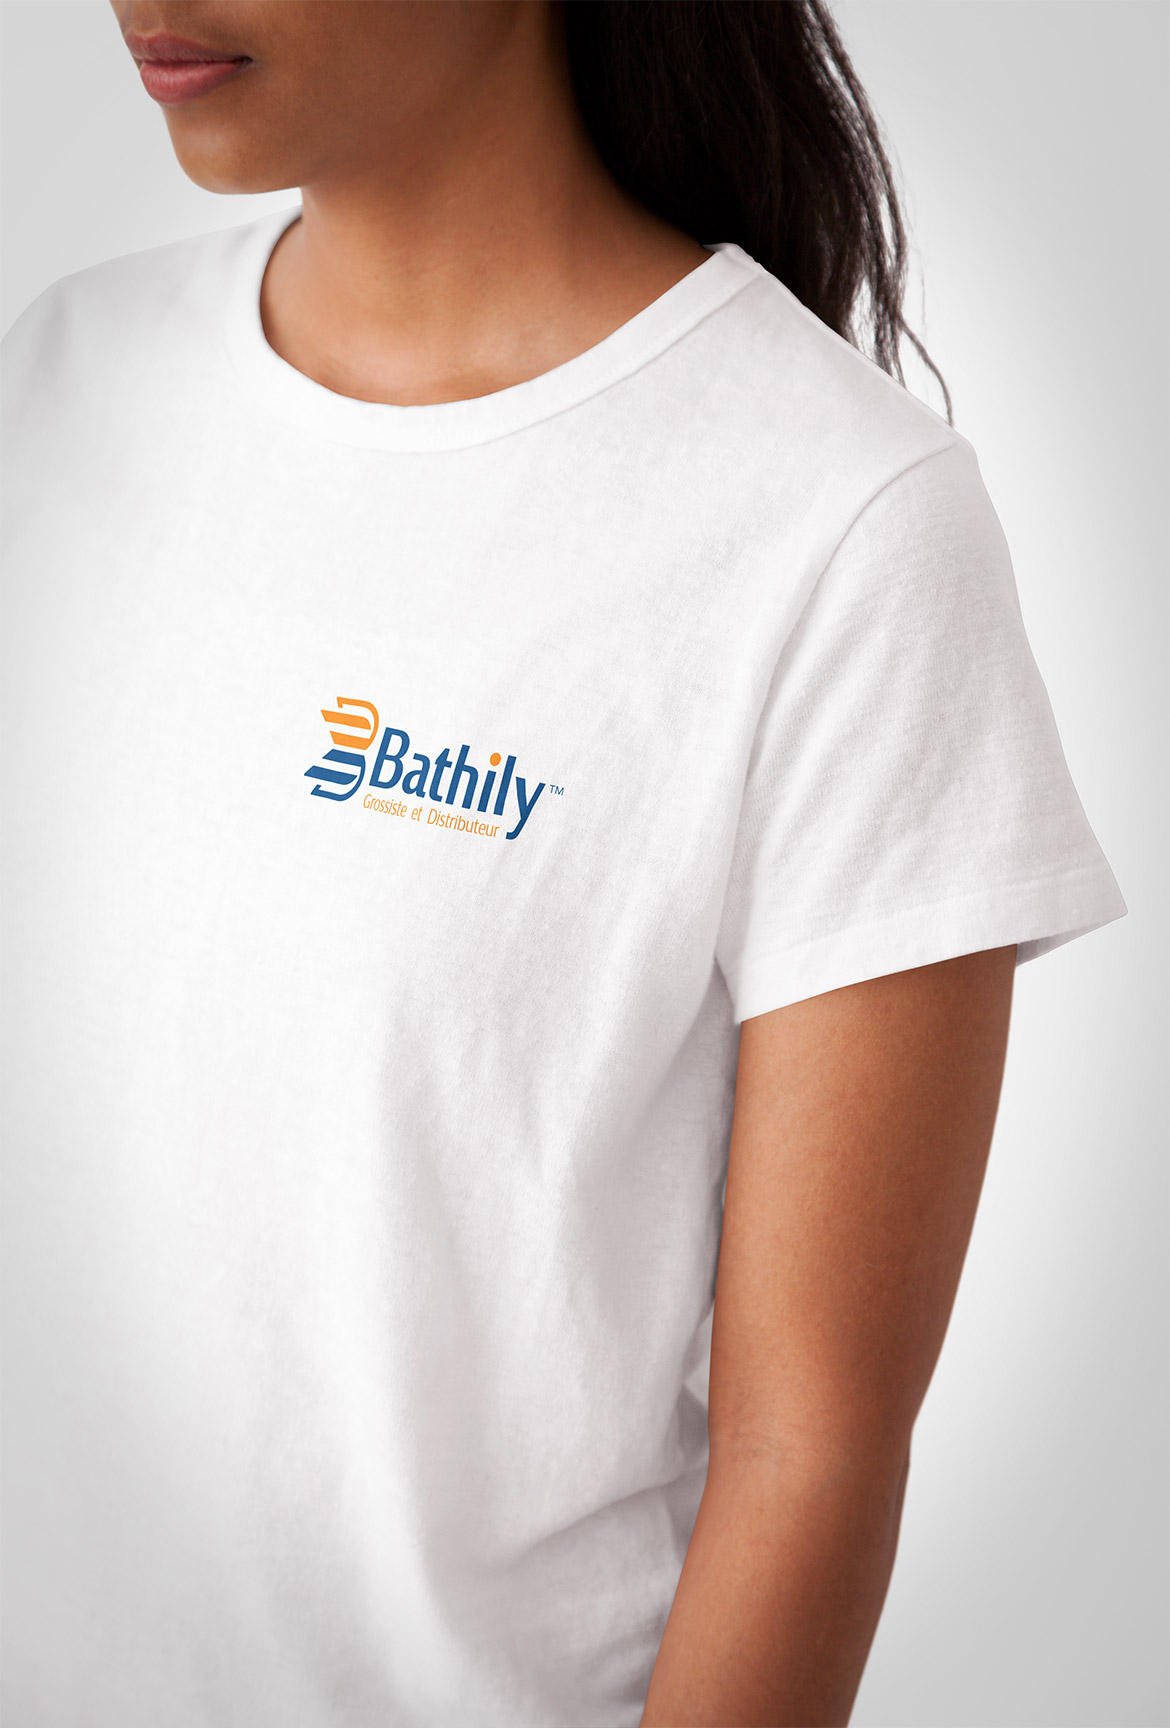 Bathily Logo on T-shirt